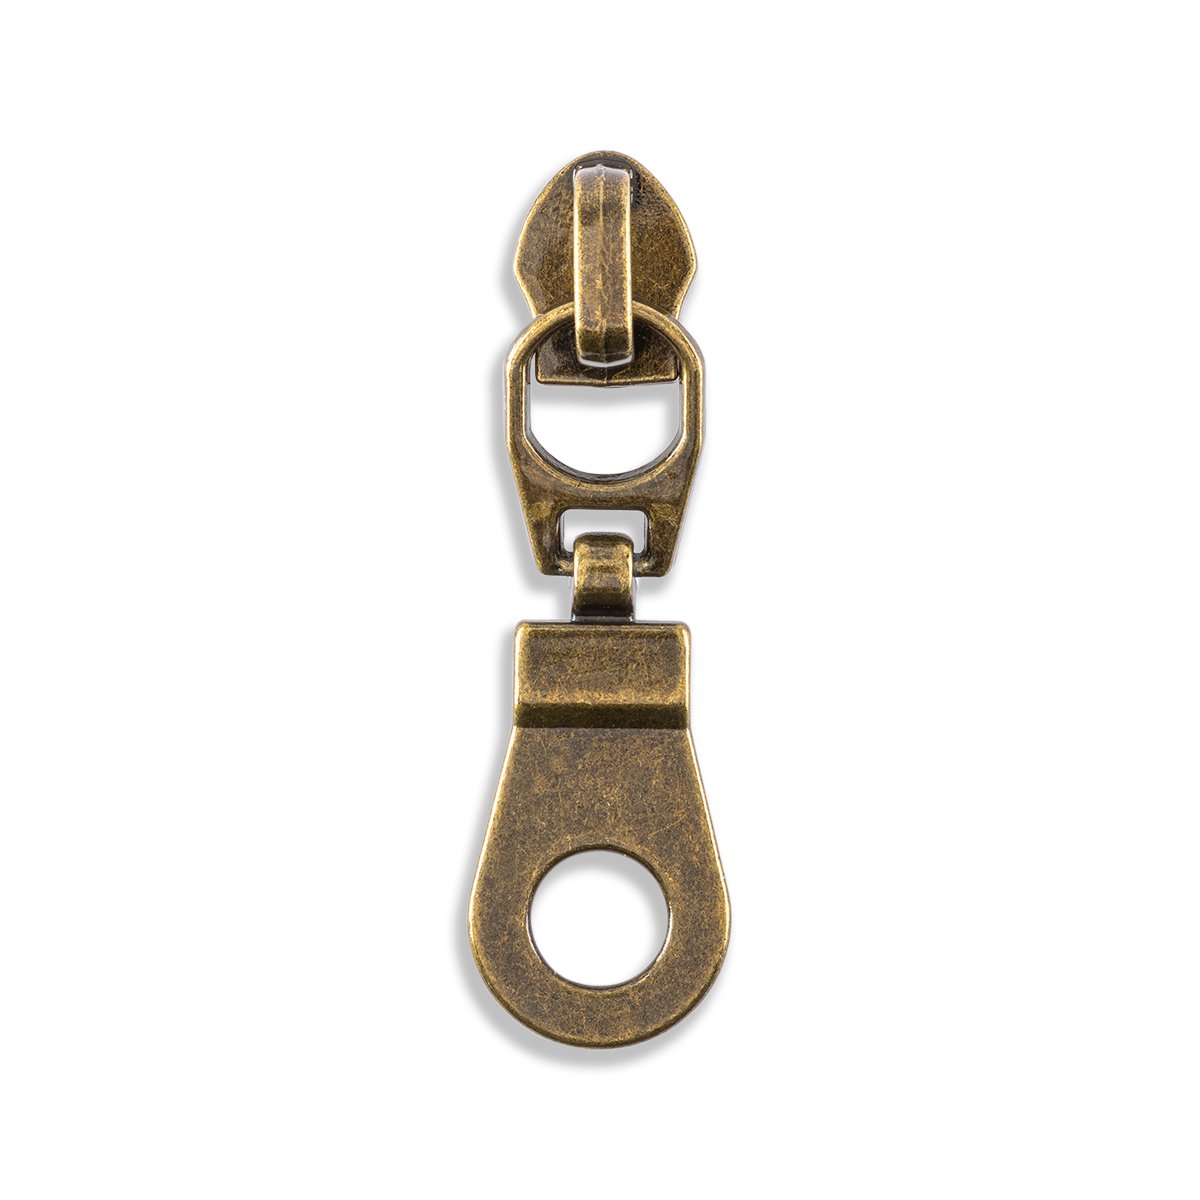 Zipper Repair Kit, Heavy Duty Zipper Pull , High Quality Nickel Brass  Antique Brass Zipper Pull 5 8 